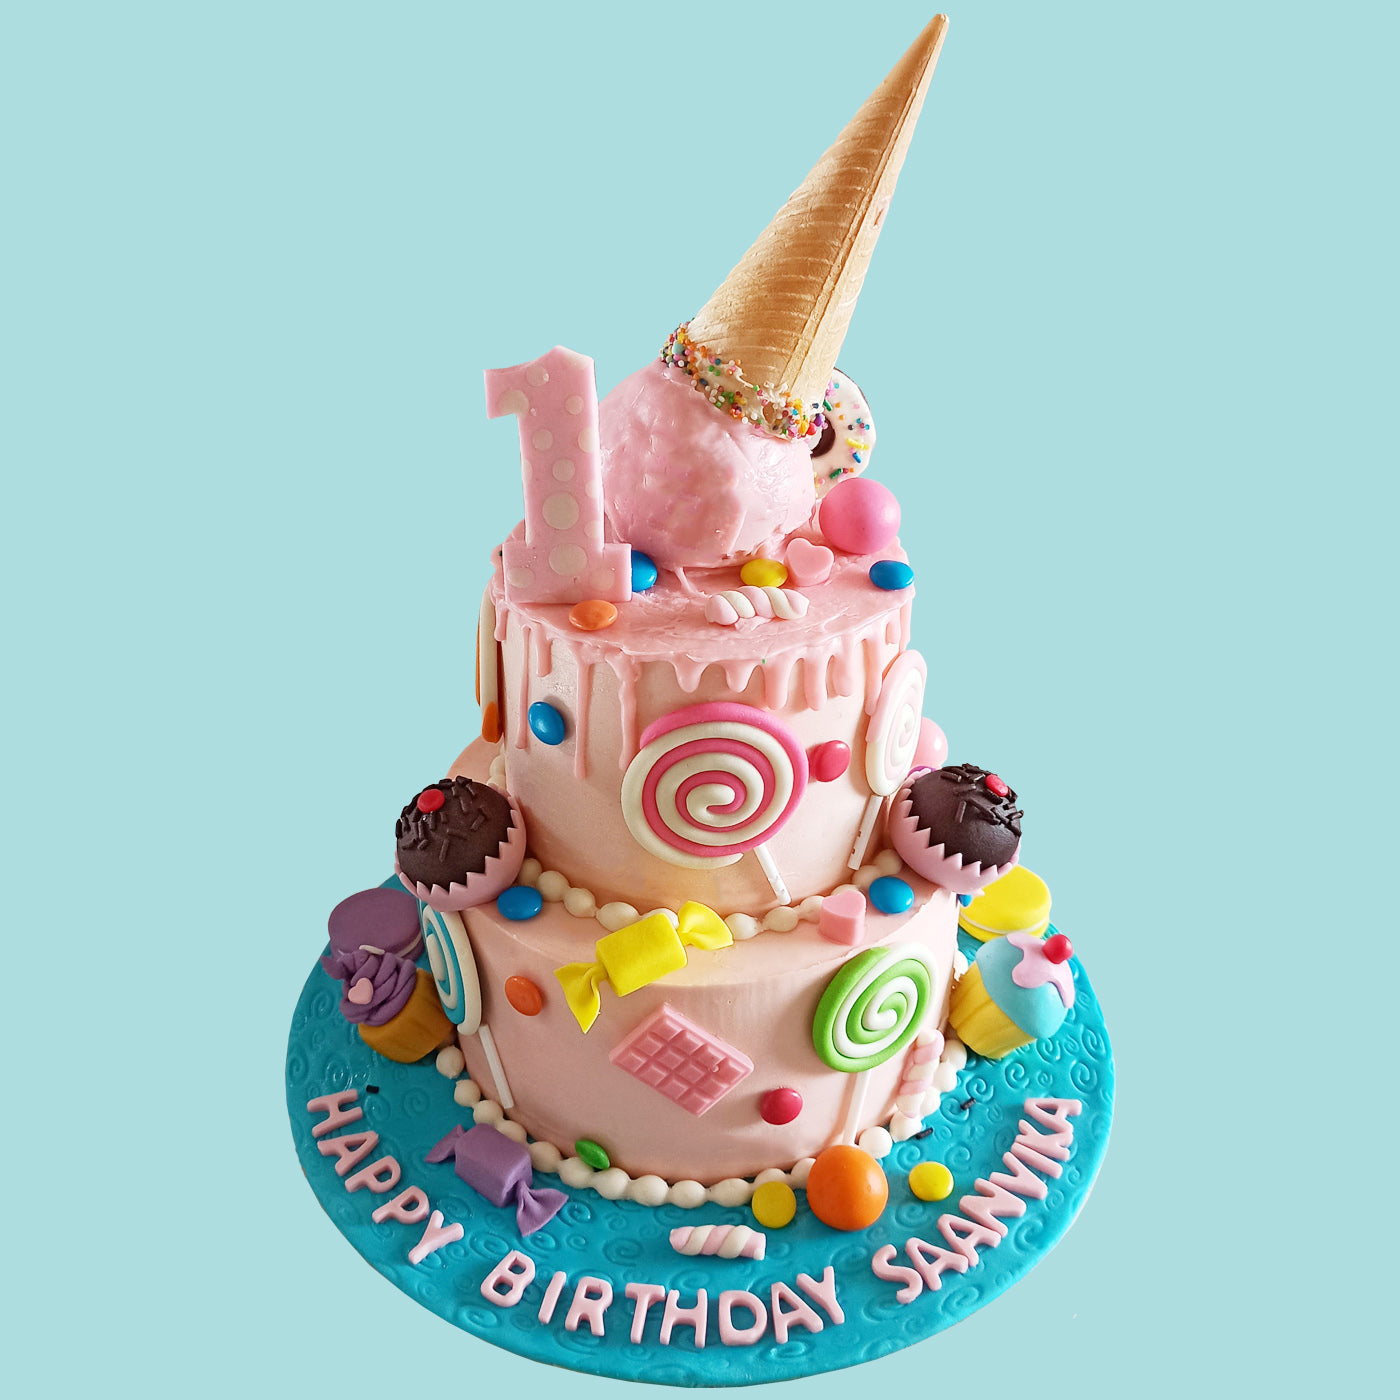 Vanilla Ice Cakes - Fresh Cream Celebration Cake